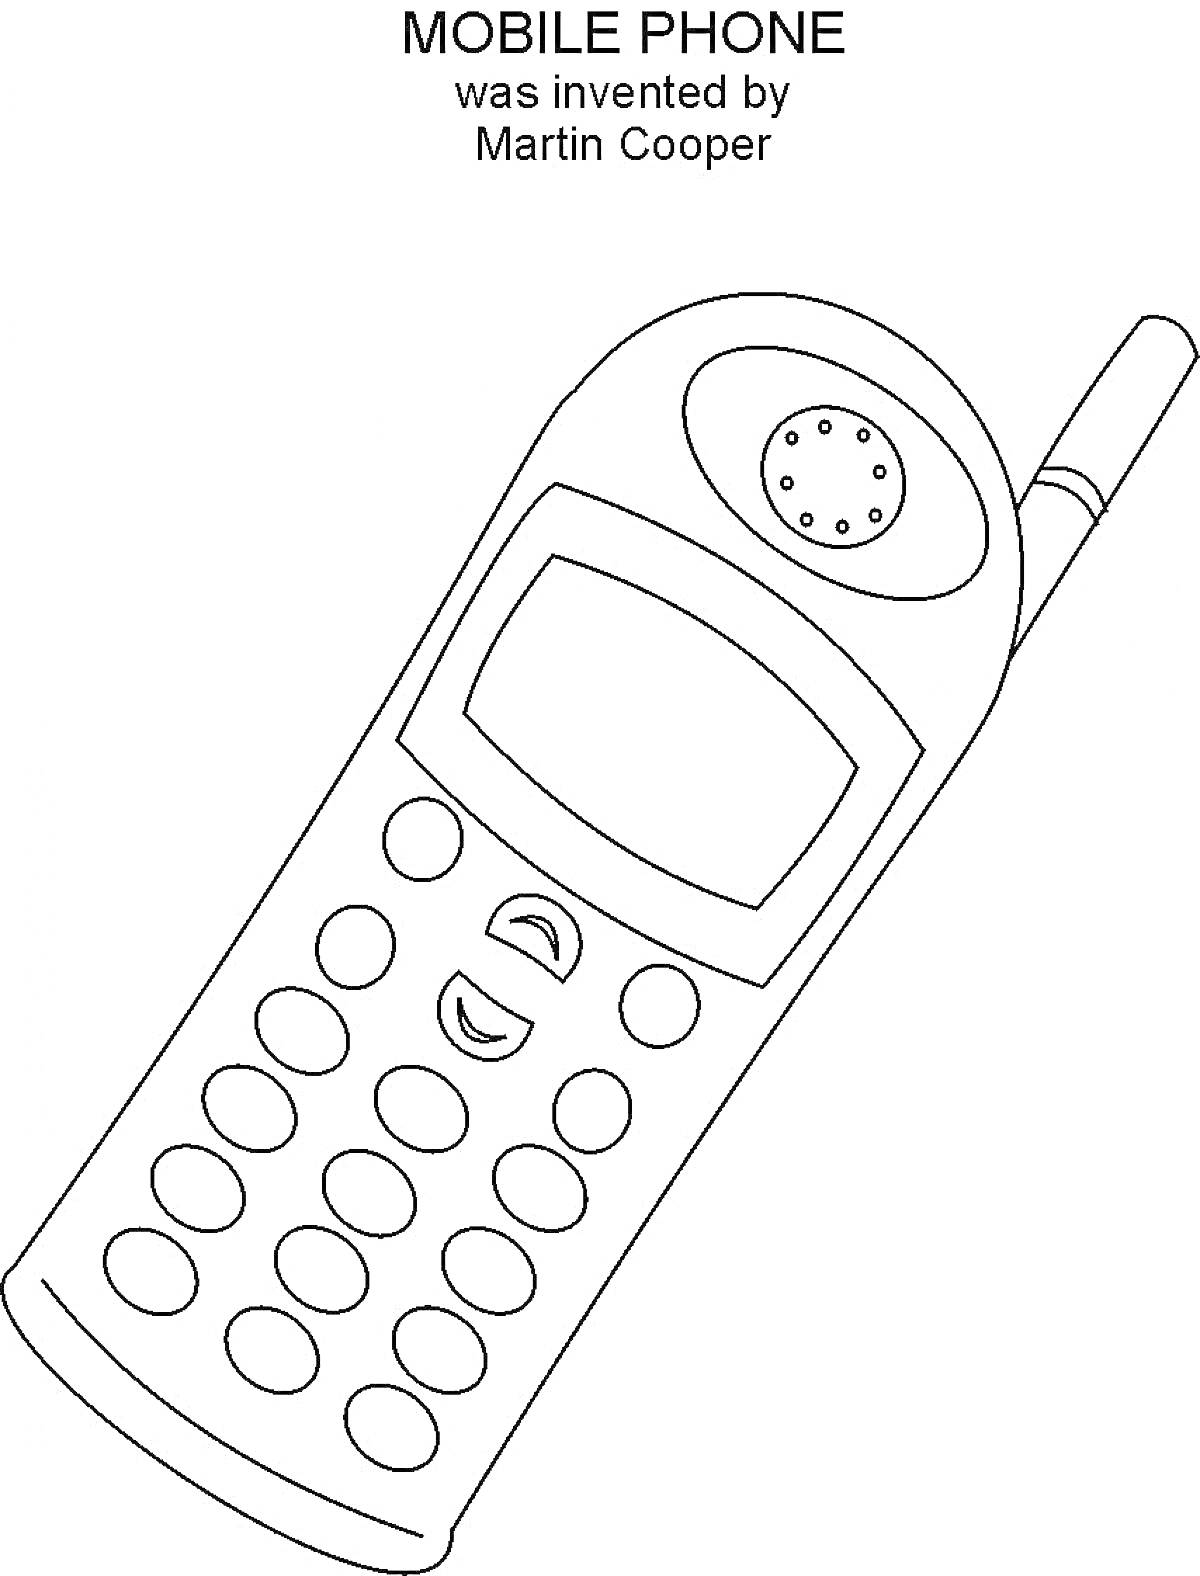 Мобильный телефон с экраном, кнопками и антенной